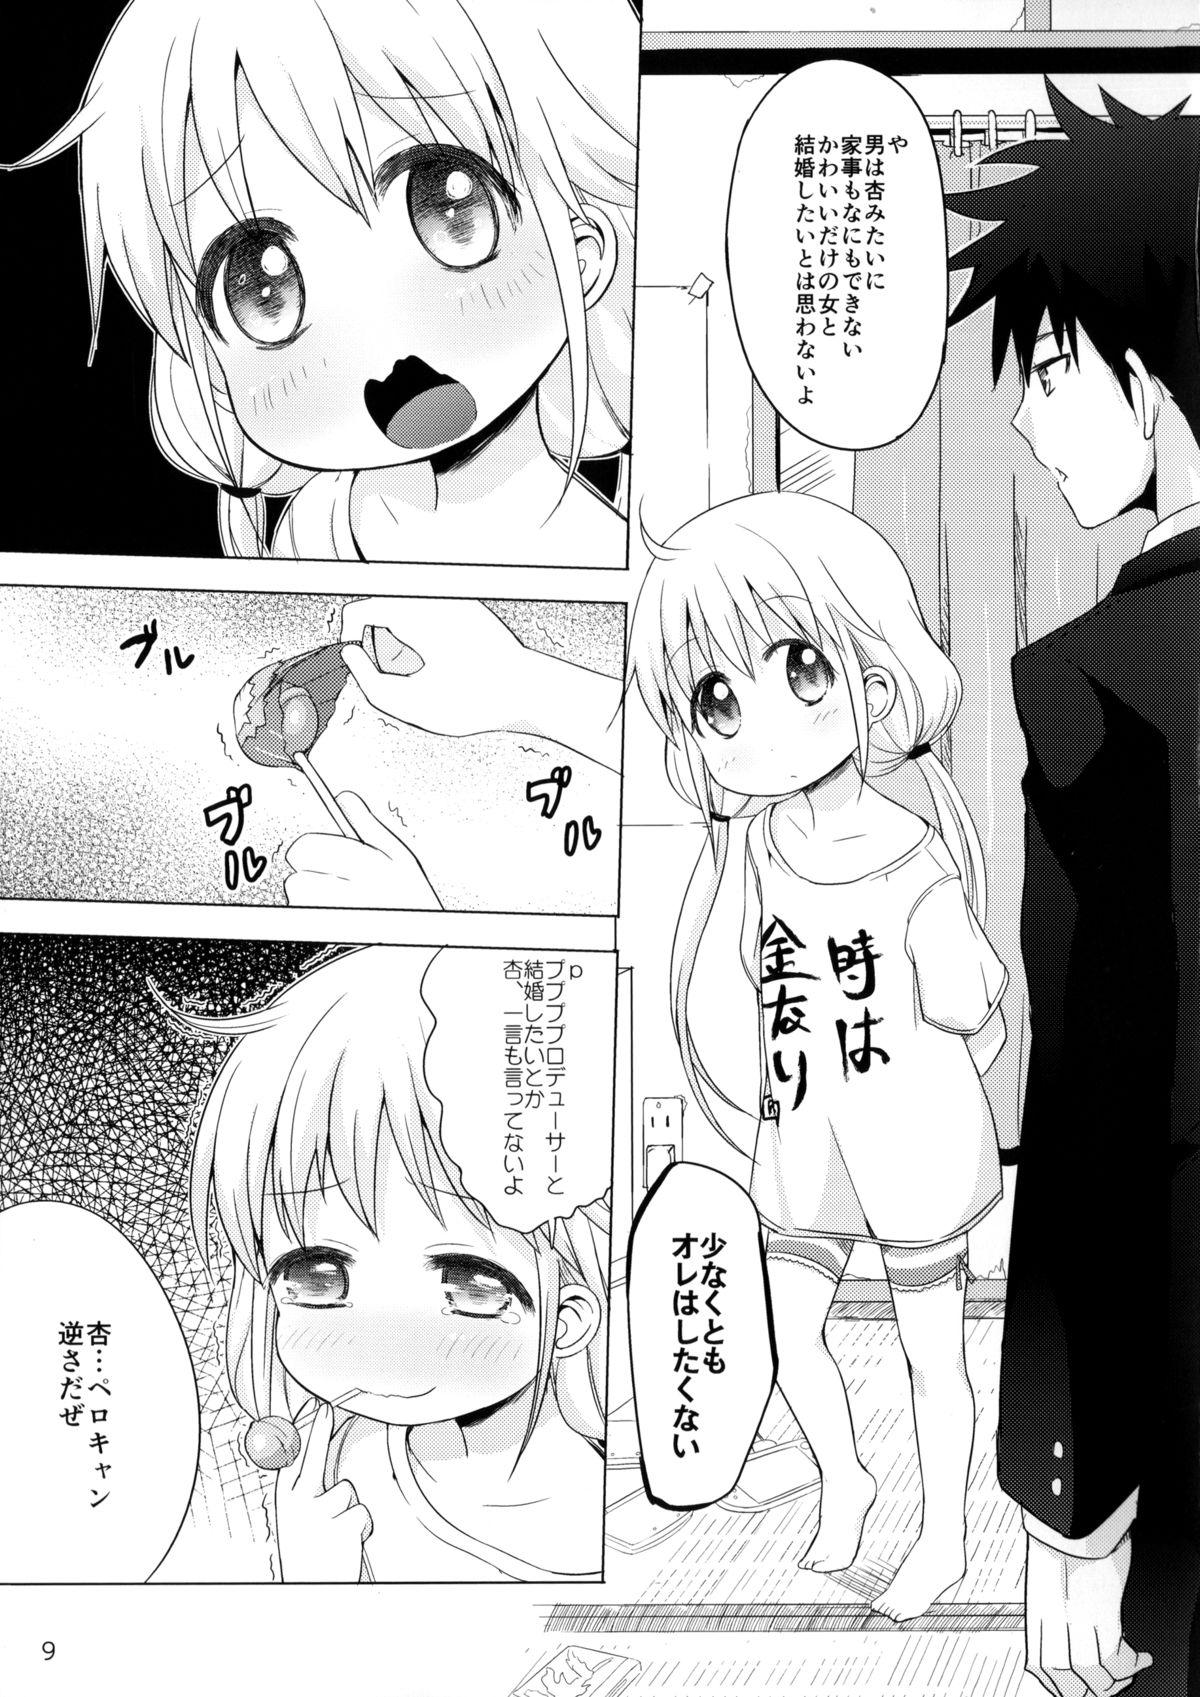 Nerd Kono Sex ga Owattara Watashi, Kekkon surunda!!! - The idolmaster Petite Girl Porn - Page 6